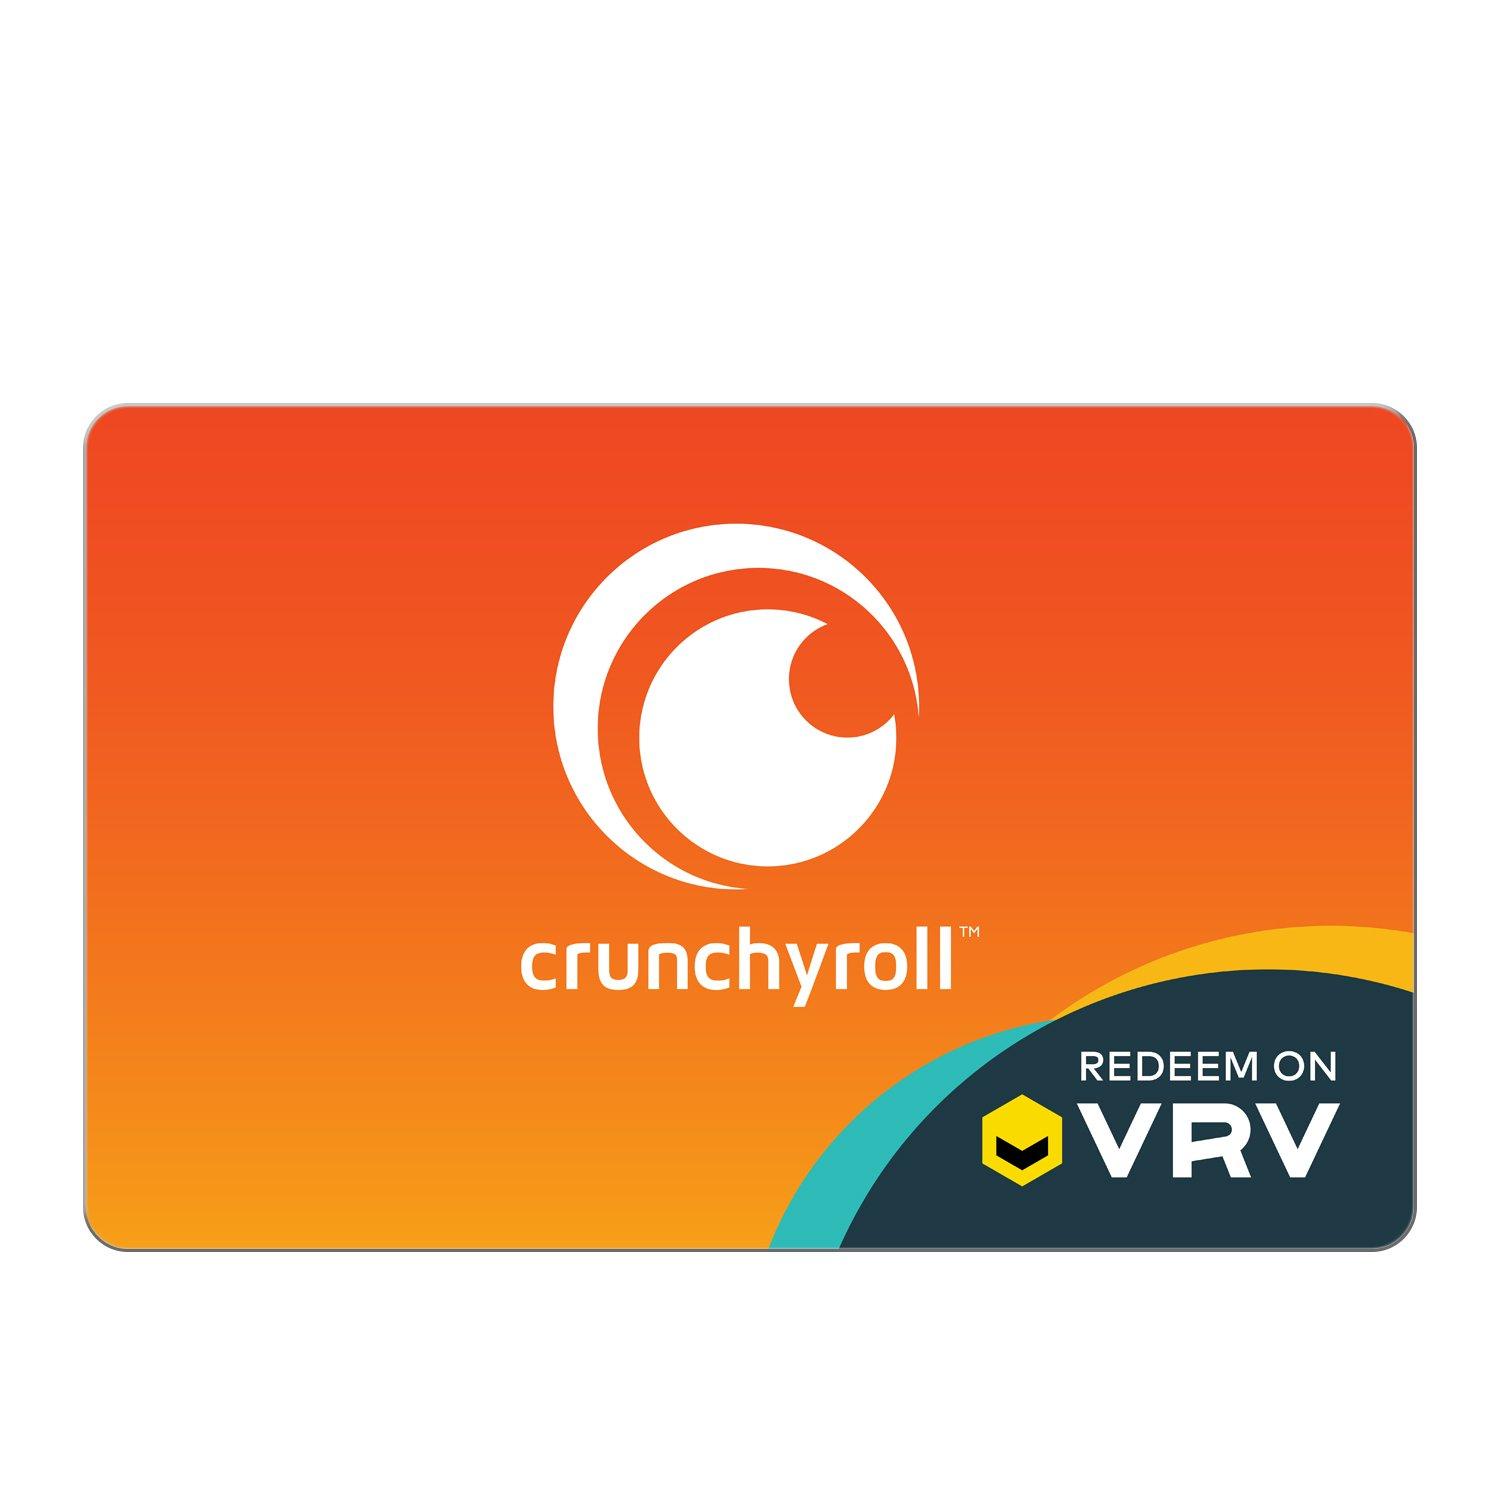 Crunchyroll on VRV $25